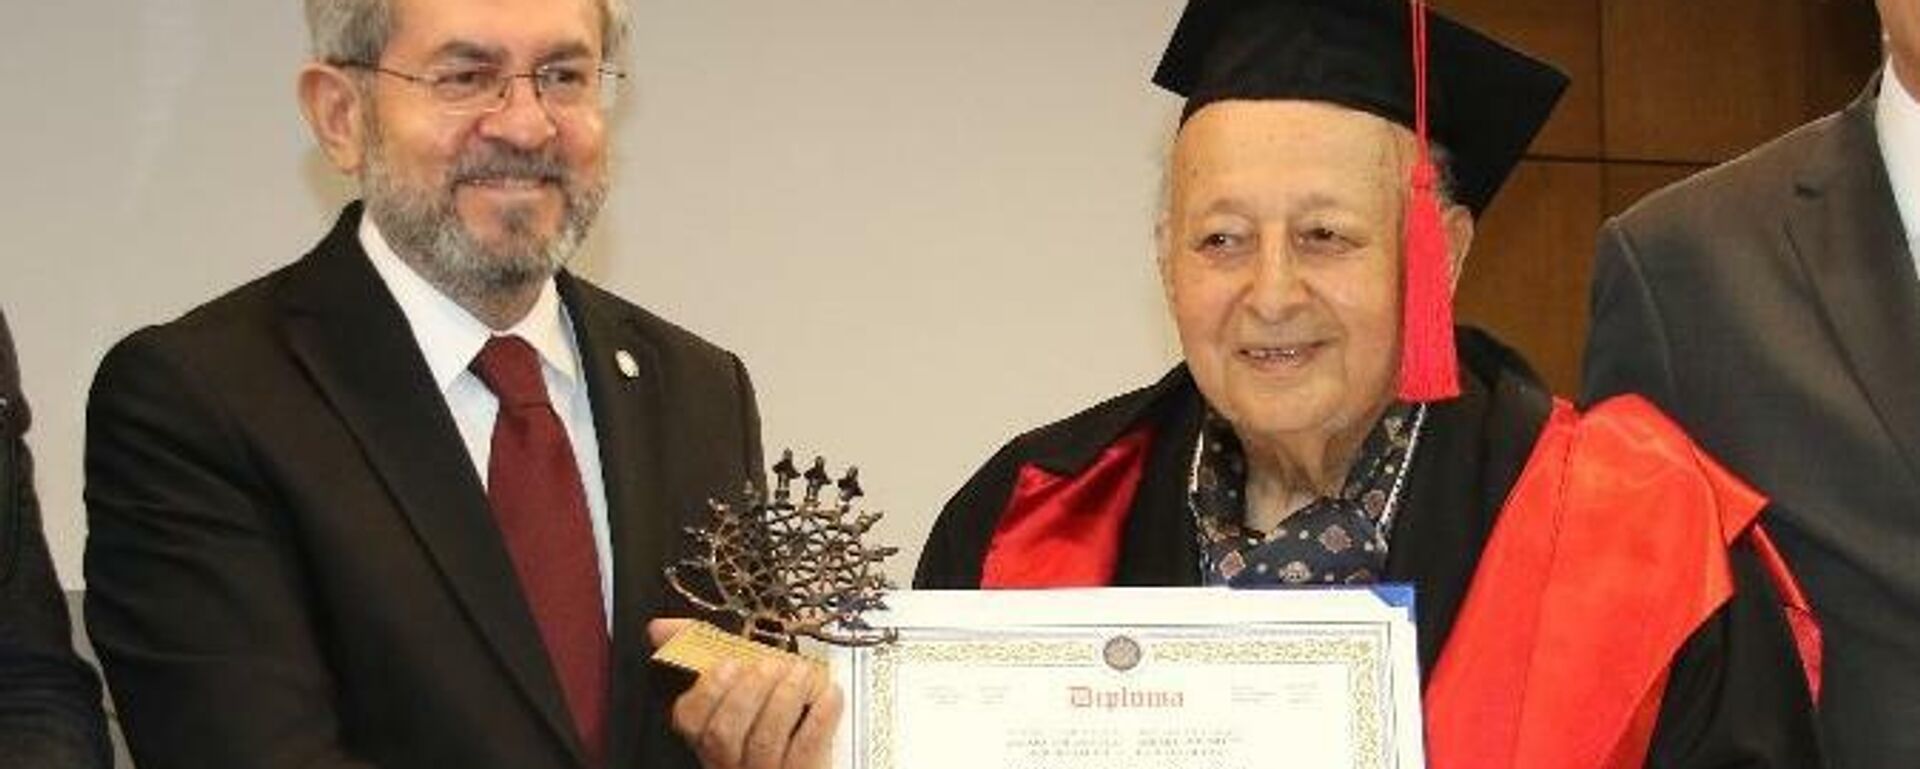 Türkiye’nin en yaşlı üniversite öğrencisi diplomasını aldı - Sputnik Türkiye, 1920, 25.02.2022